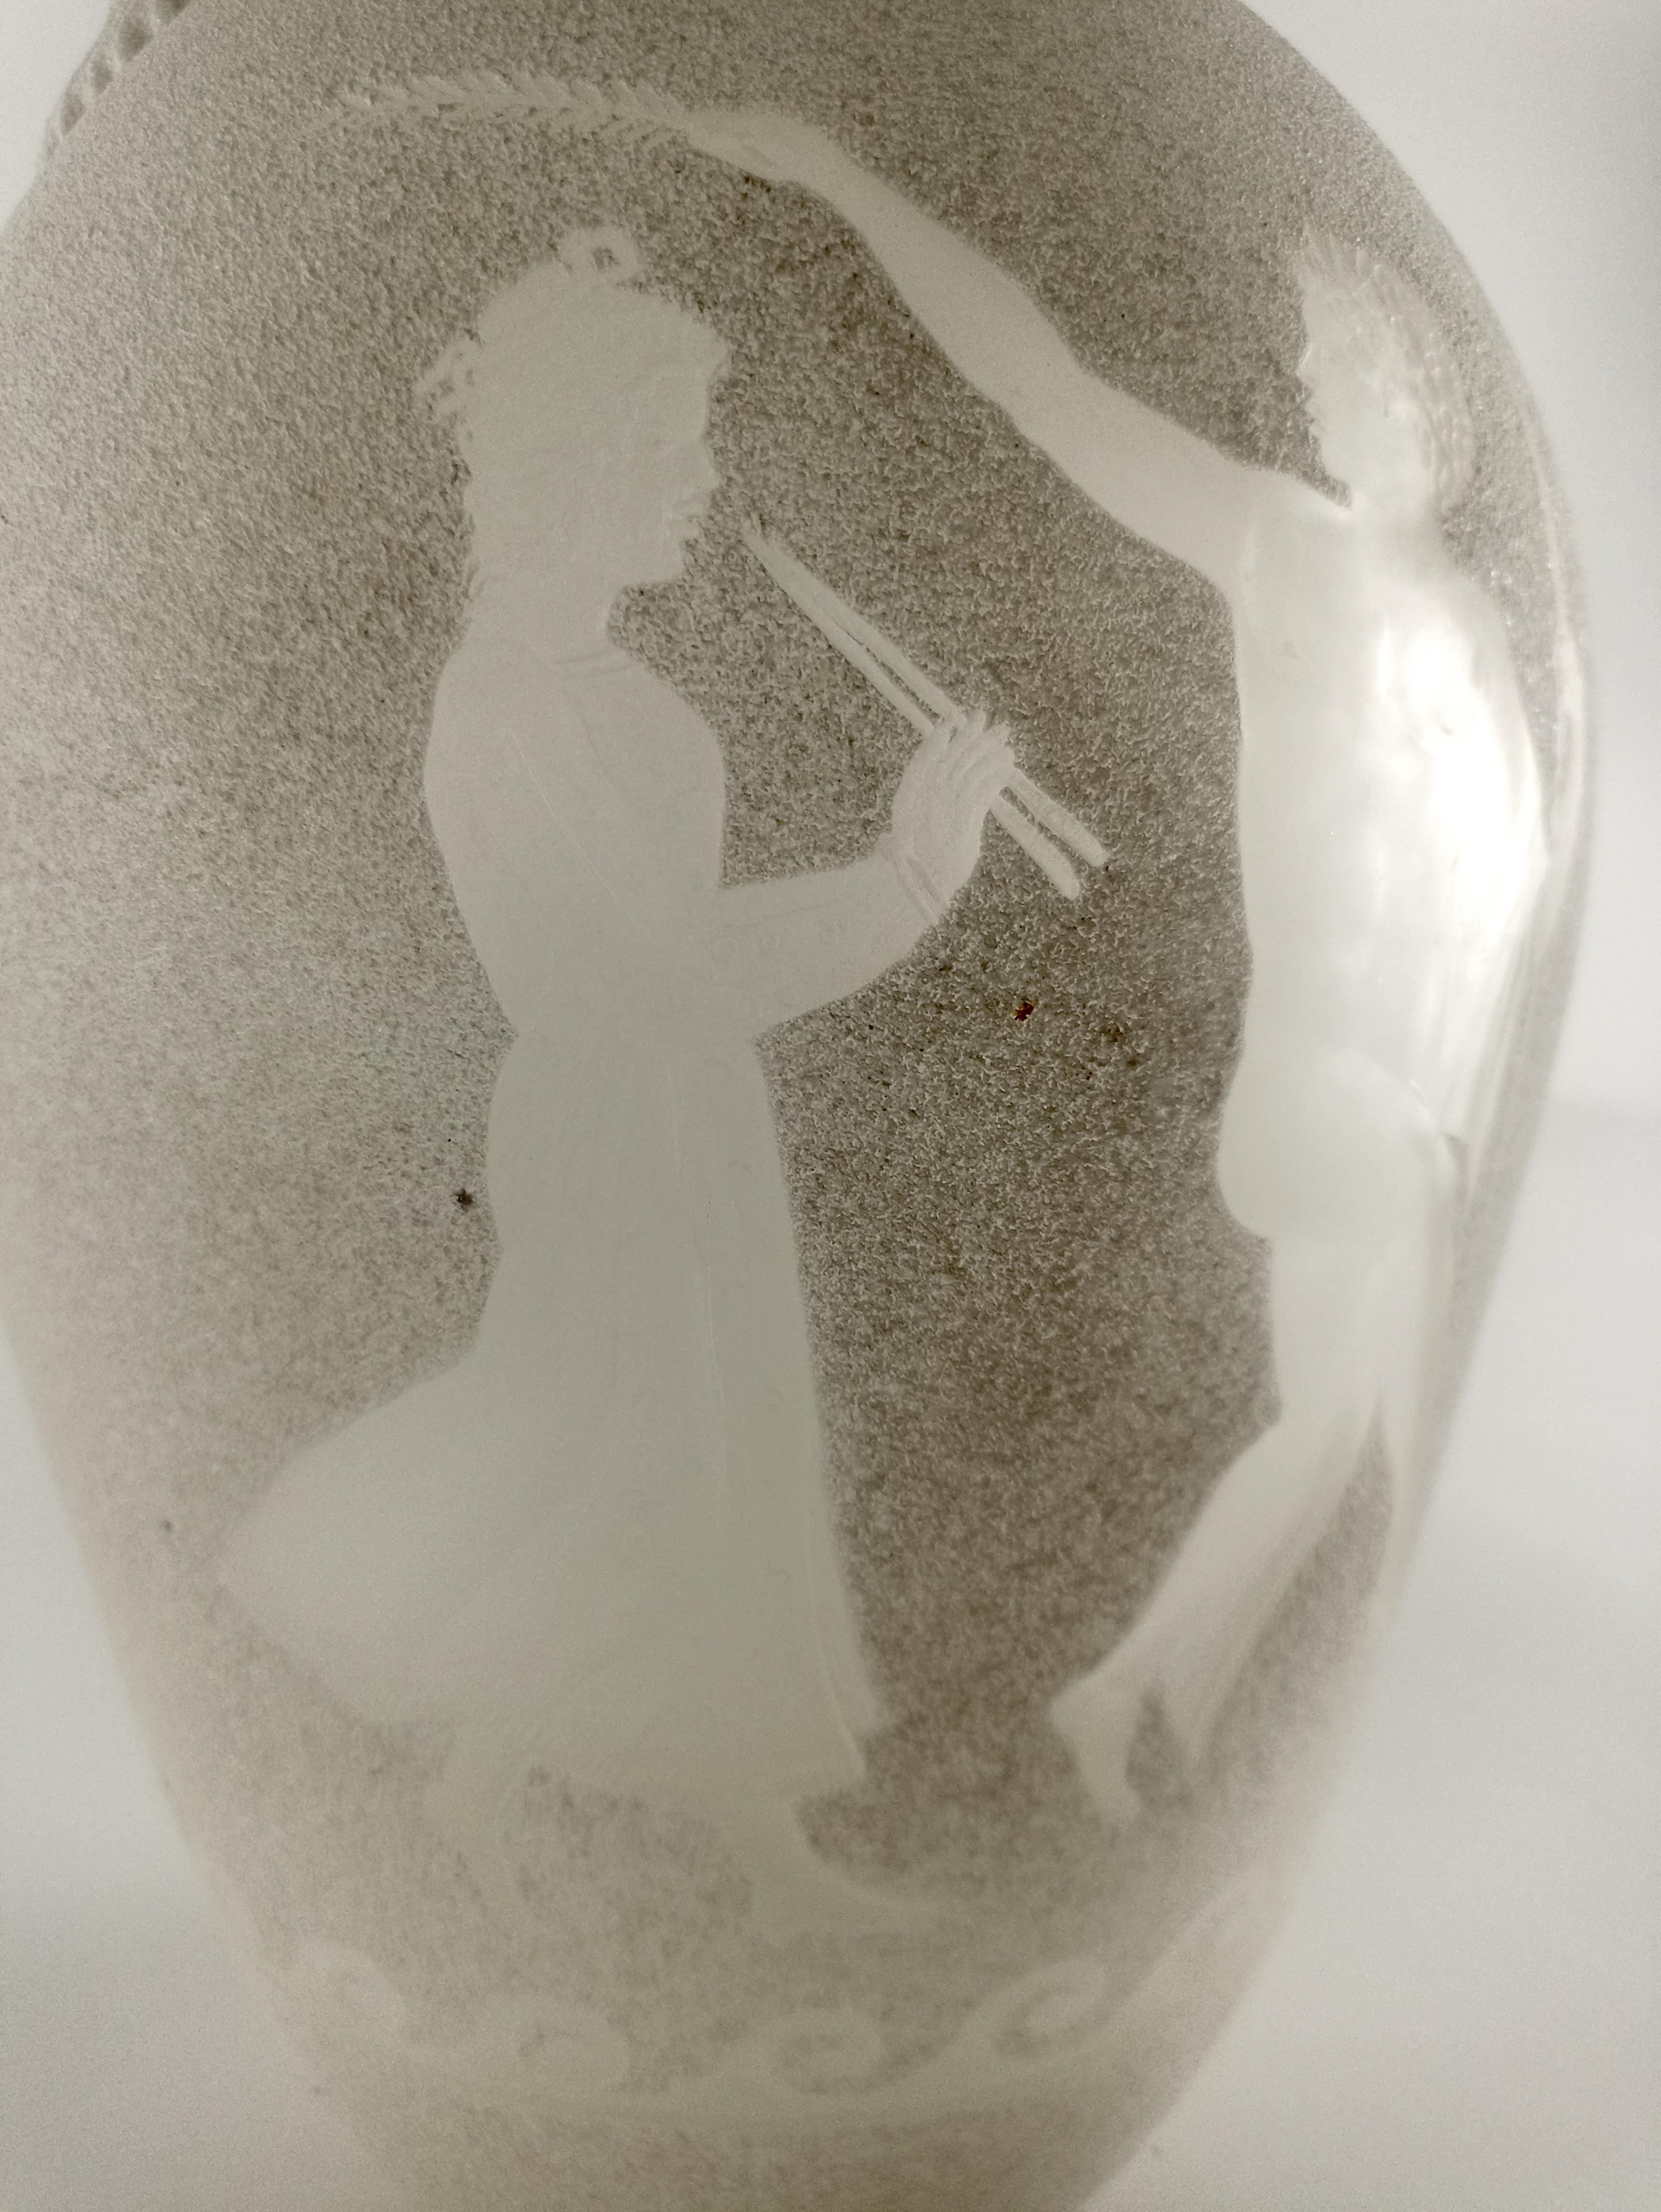 Die exquisite Vase aus sandgestrahltem Murano-Glas - eine der traditionellsten Techniken der Kaltbearbeitung von Murano-Glas - wertet Ihre Einrichtung auf. Diese elegante und klassische Vase zeigt auf der Vorderseite ein wunderschön eingraviertes